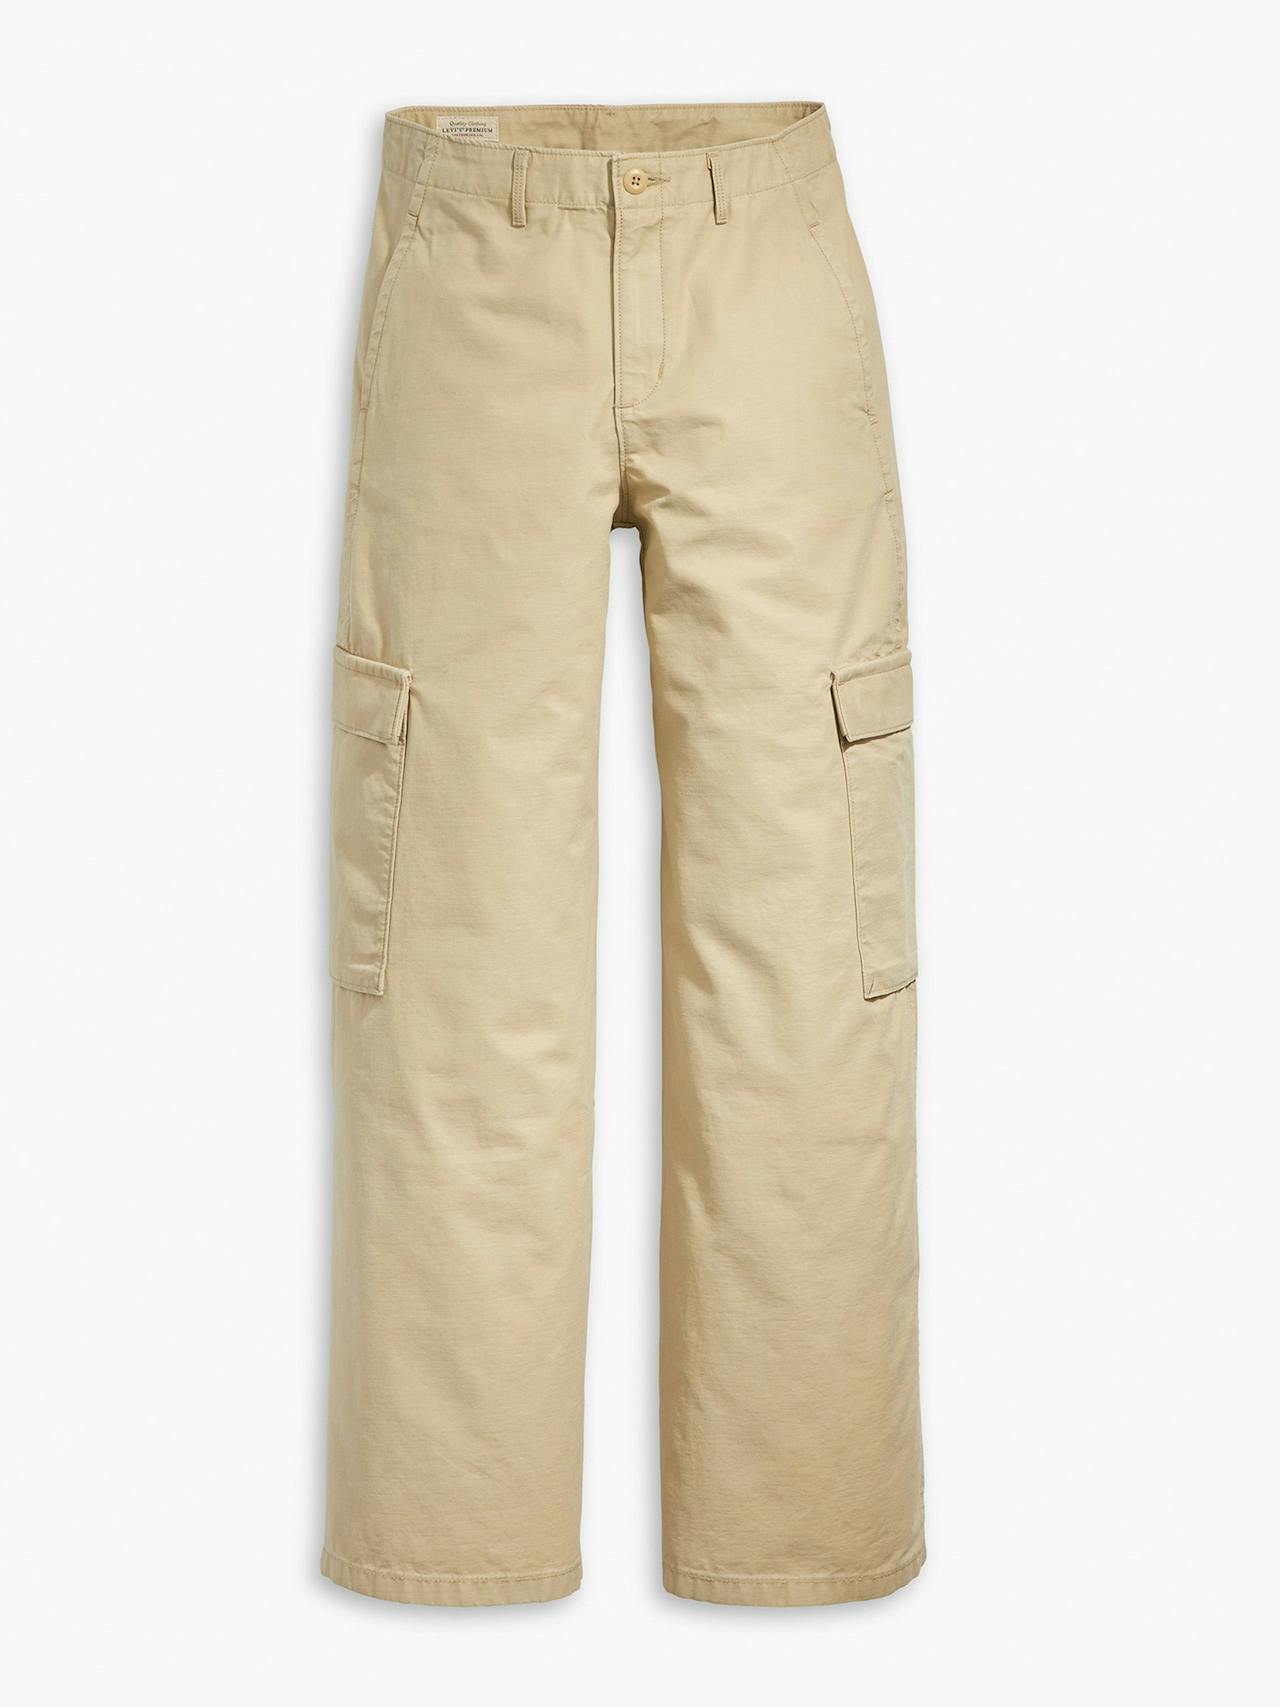 Baggy cargo pants in beige